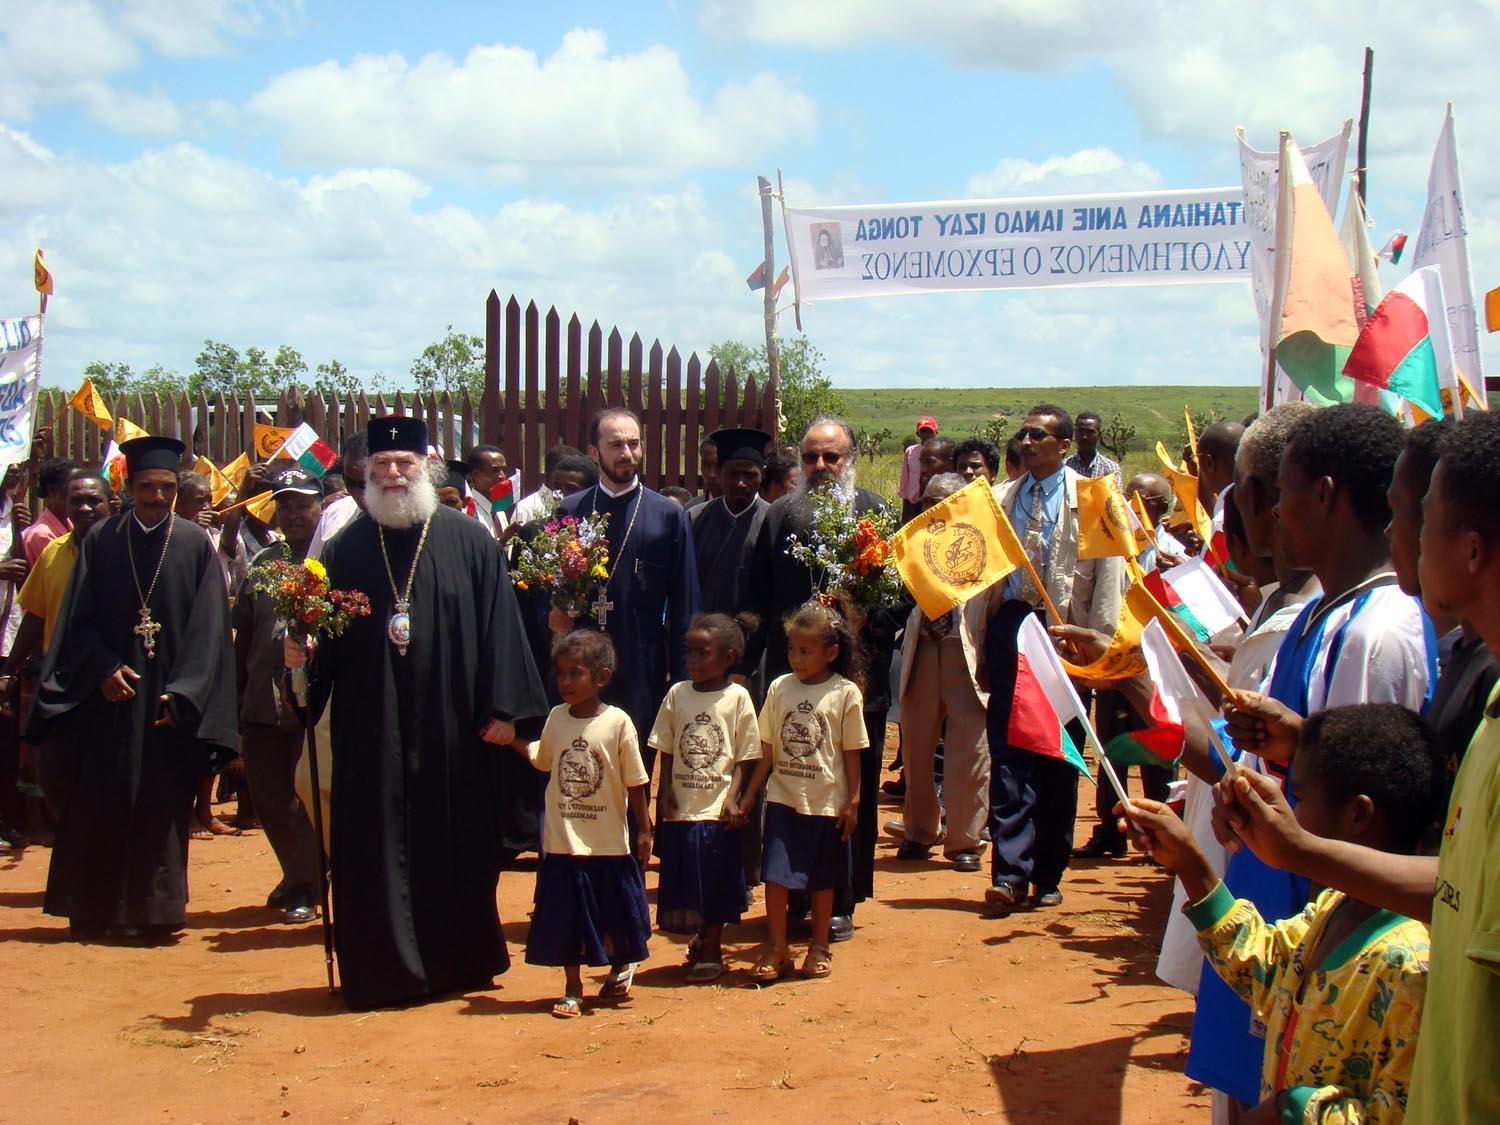 Ιεραποστολική επίσκεψη της Α.Θ.Μ. στην Μαδαγασκάρη - Θερμή υποδοχή της Α.Θ.Μ. στην πόλη Τουλεάρ της νοτίου Μαδαγασκάρης.